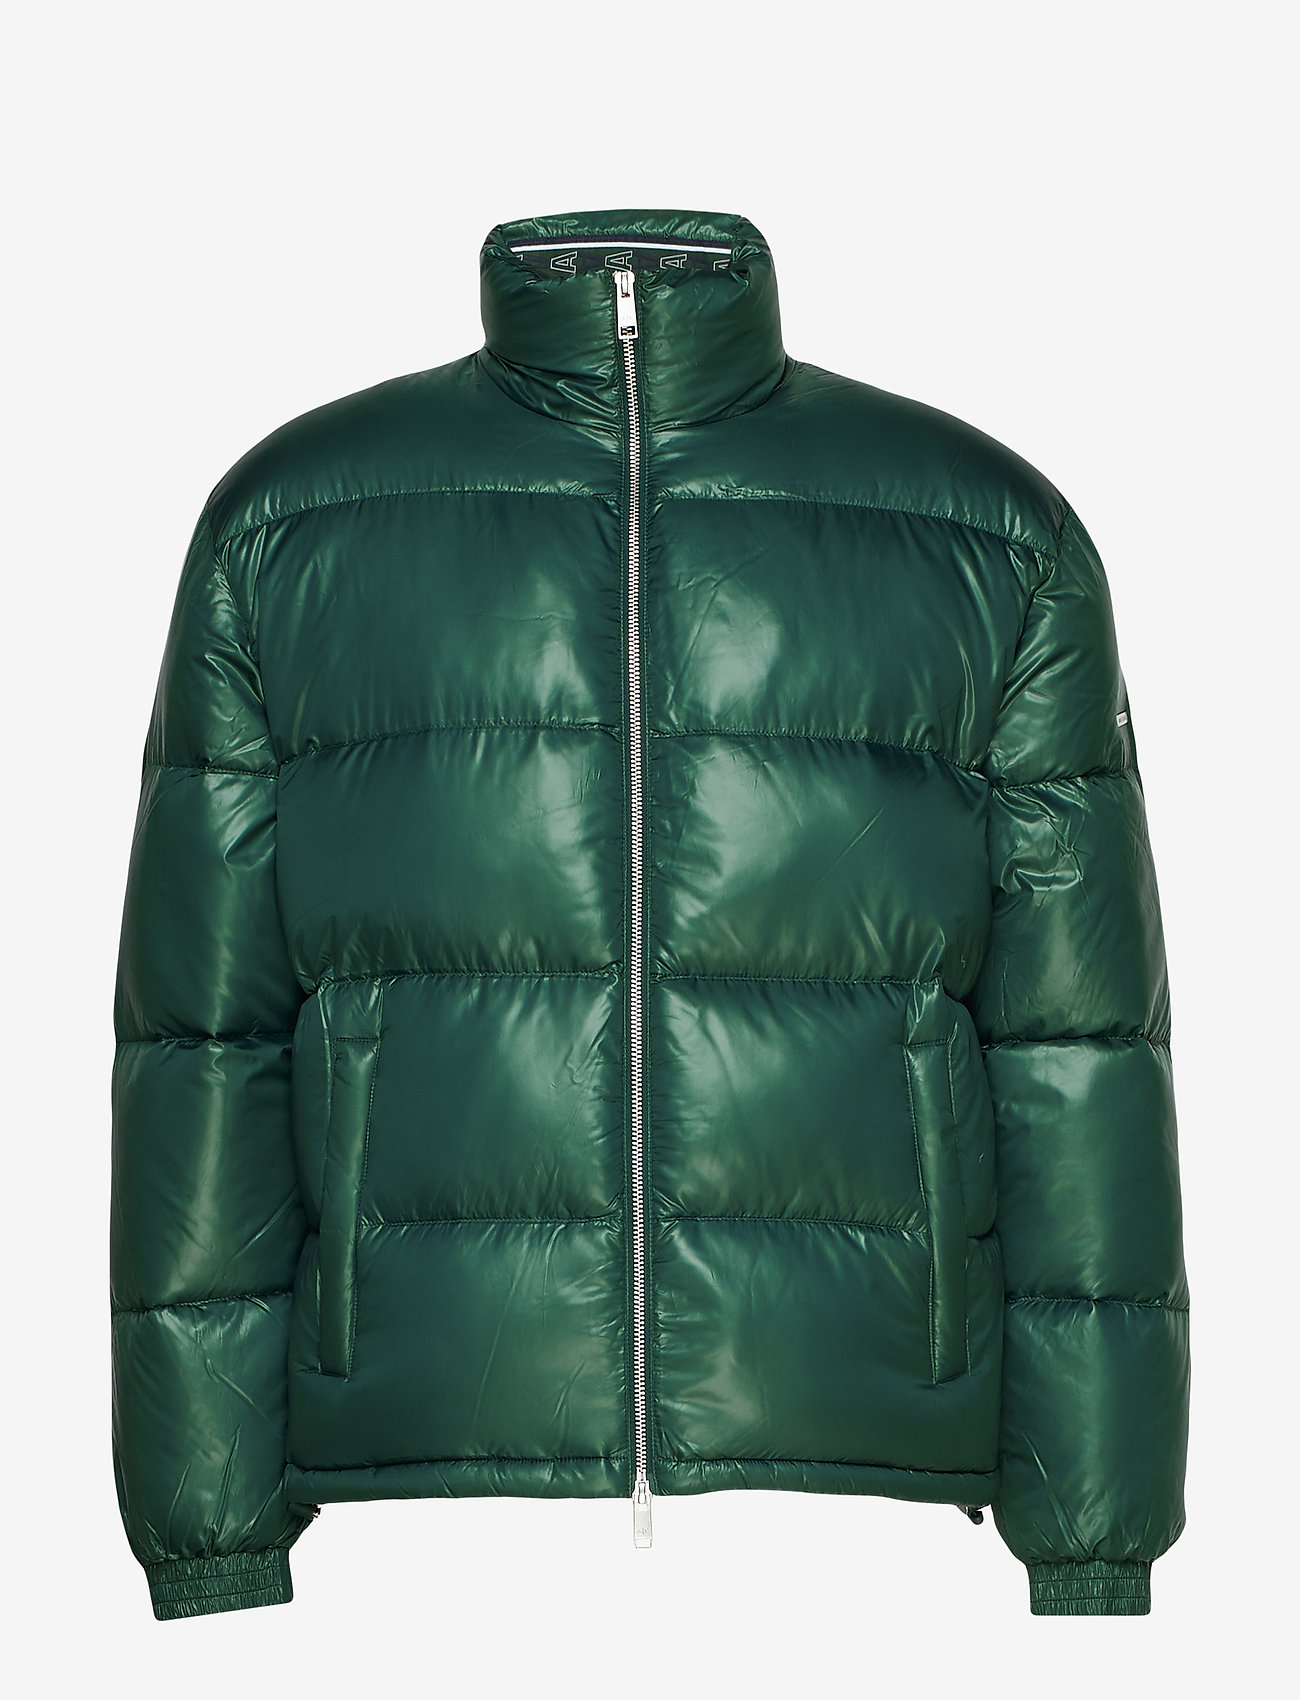 green ea7 jacket